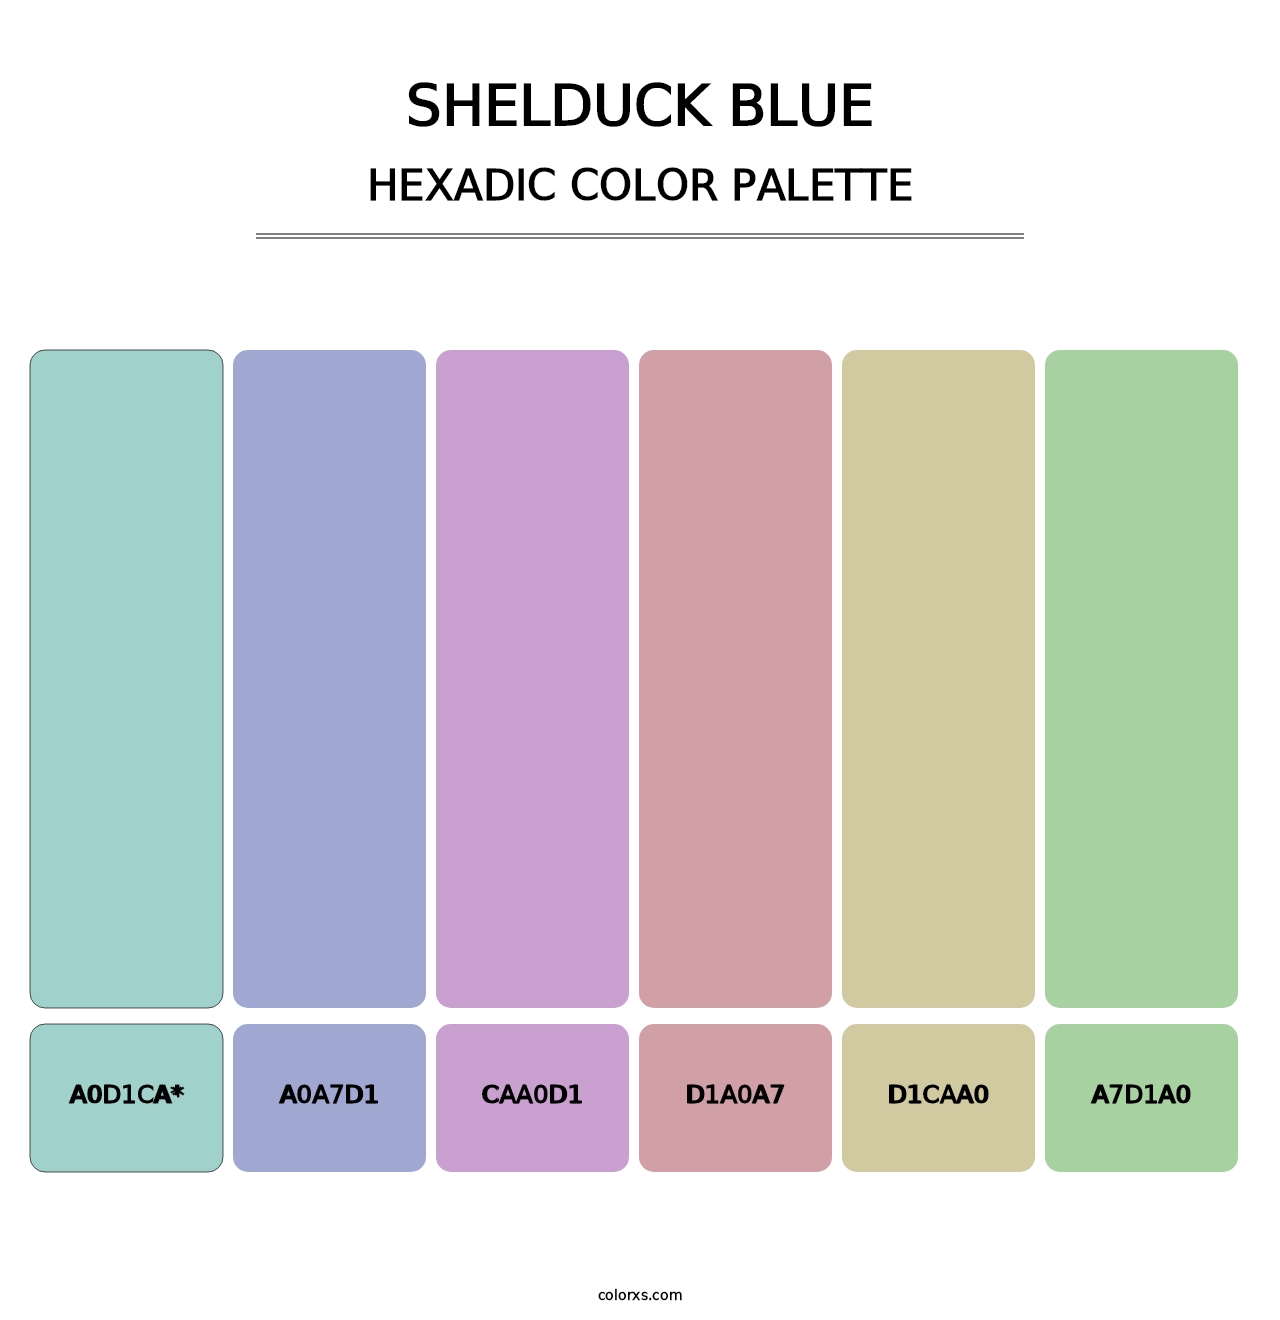 Shelduck Blue - Hexadic Color Palette